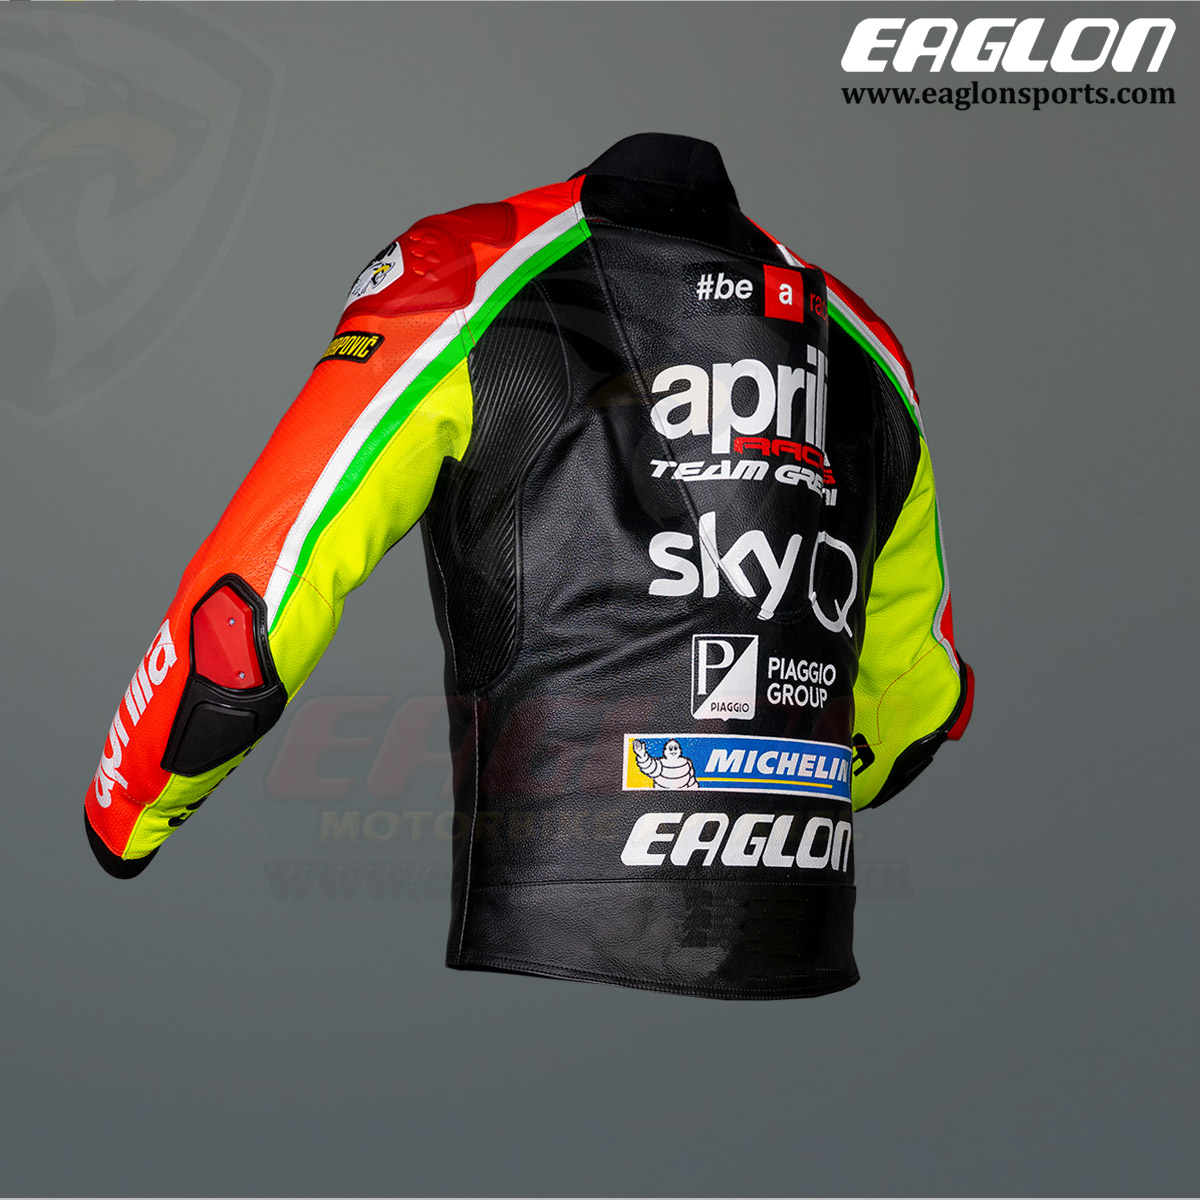 Aliex-Espargaro-Aprilia-MotoGP-2020-Leather-Race-Jacket